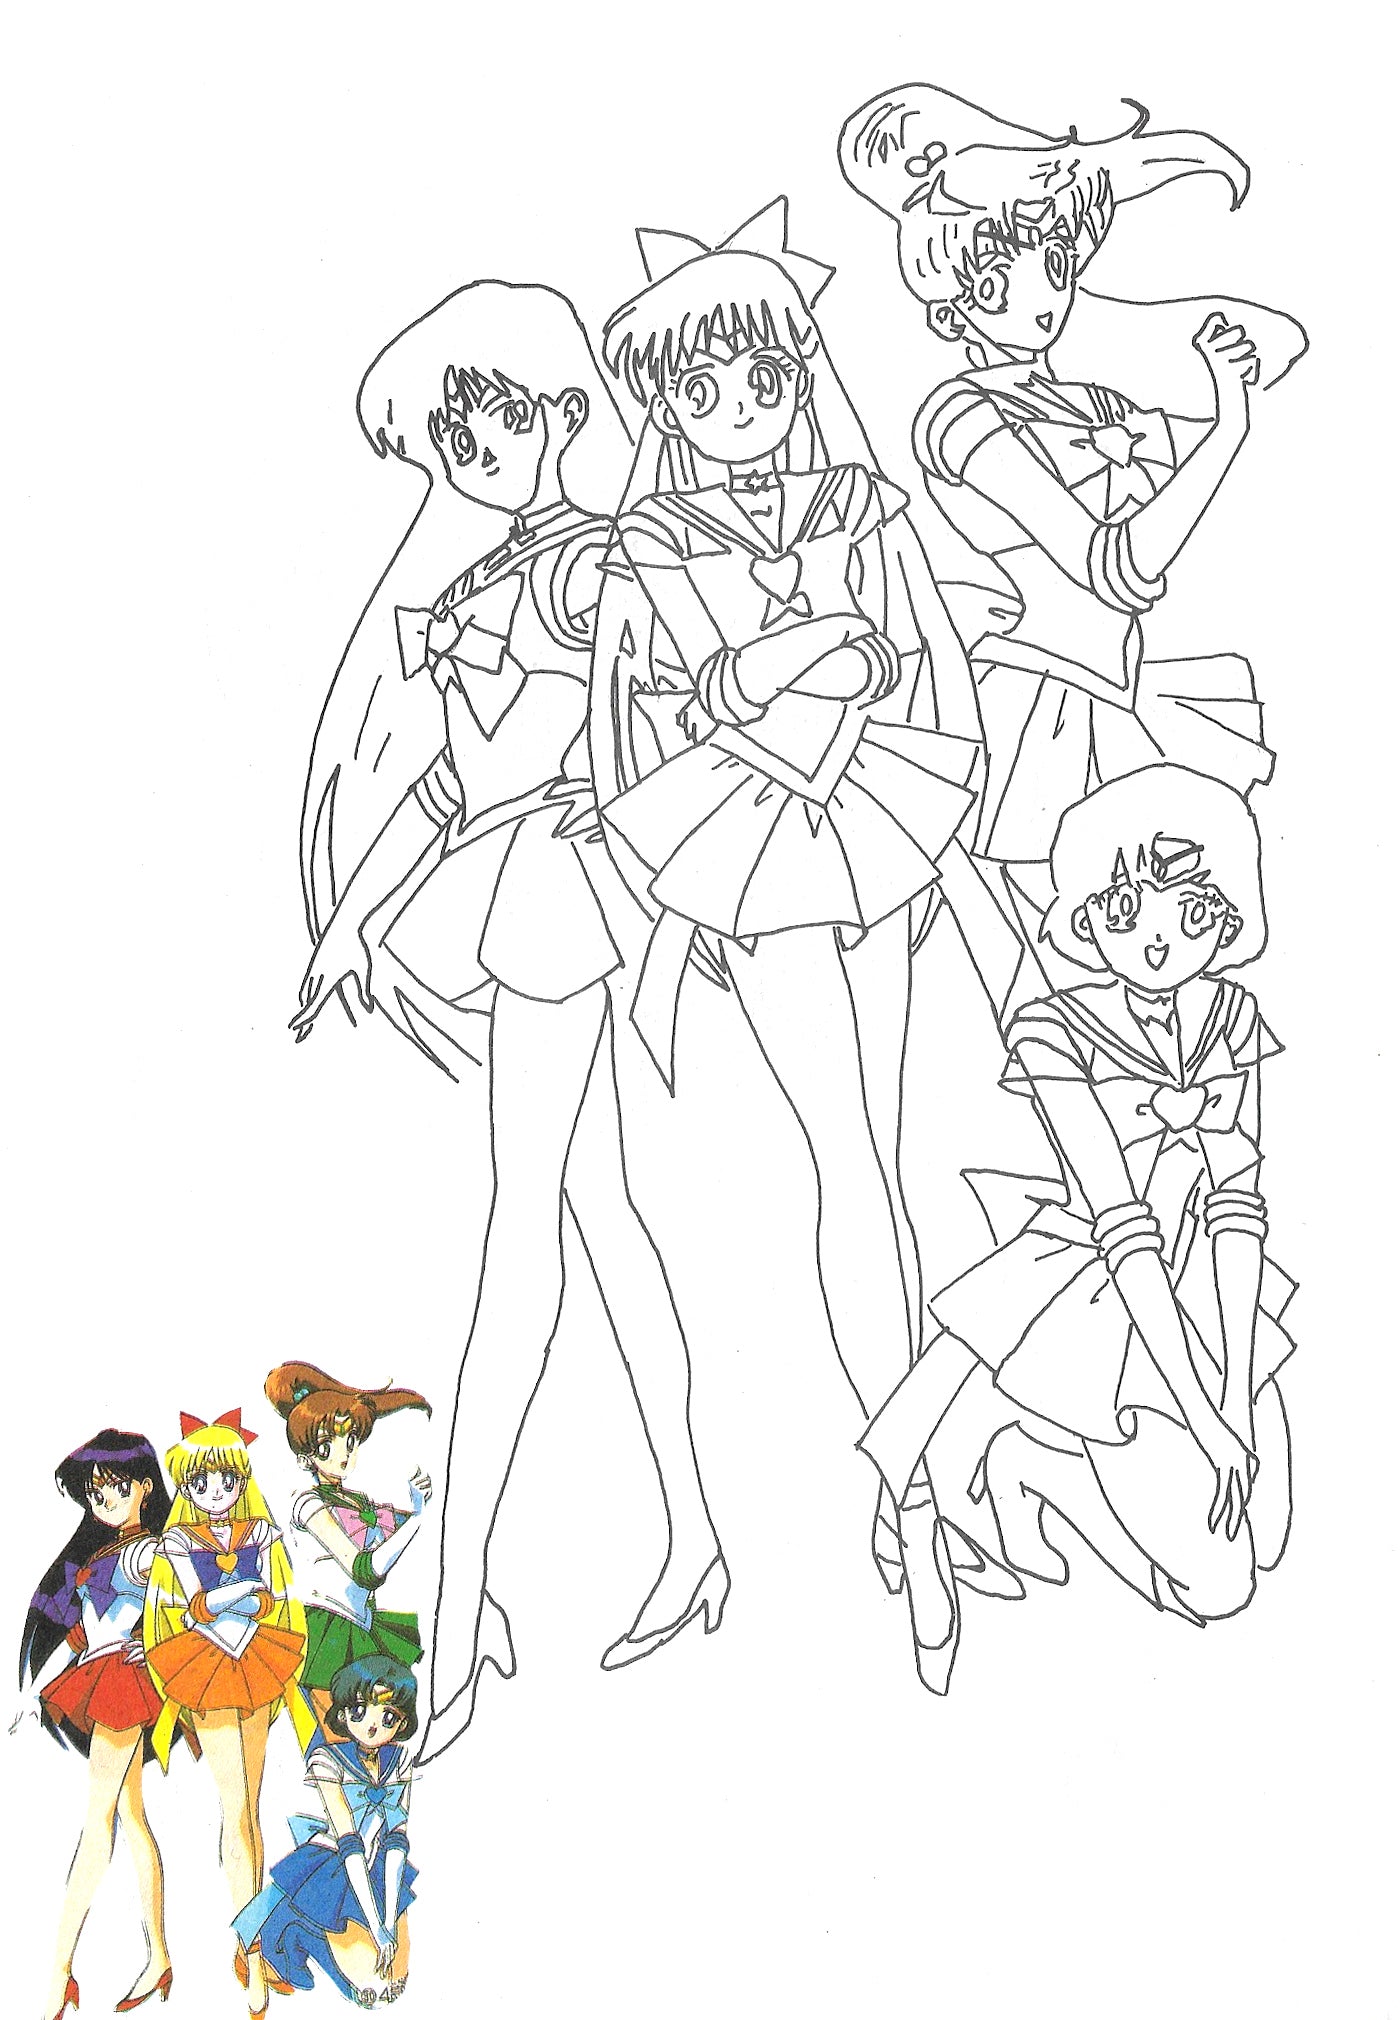 Sailor moon coloring pages â avane shop